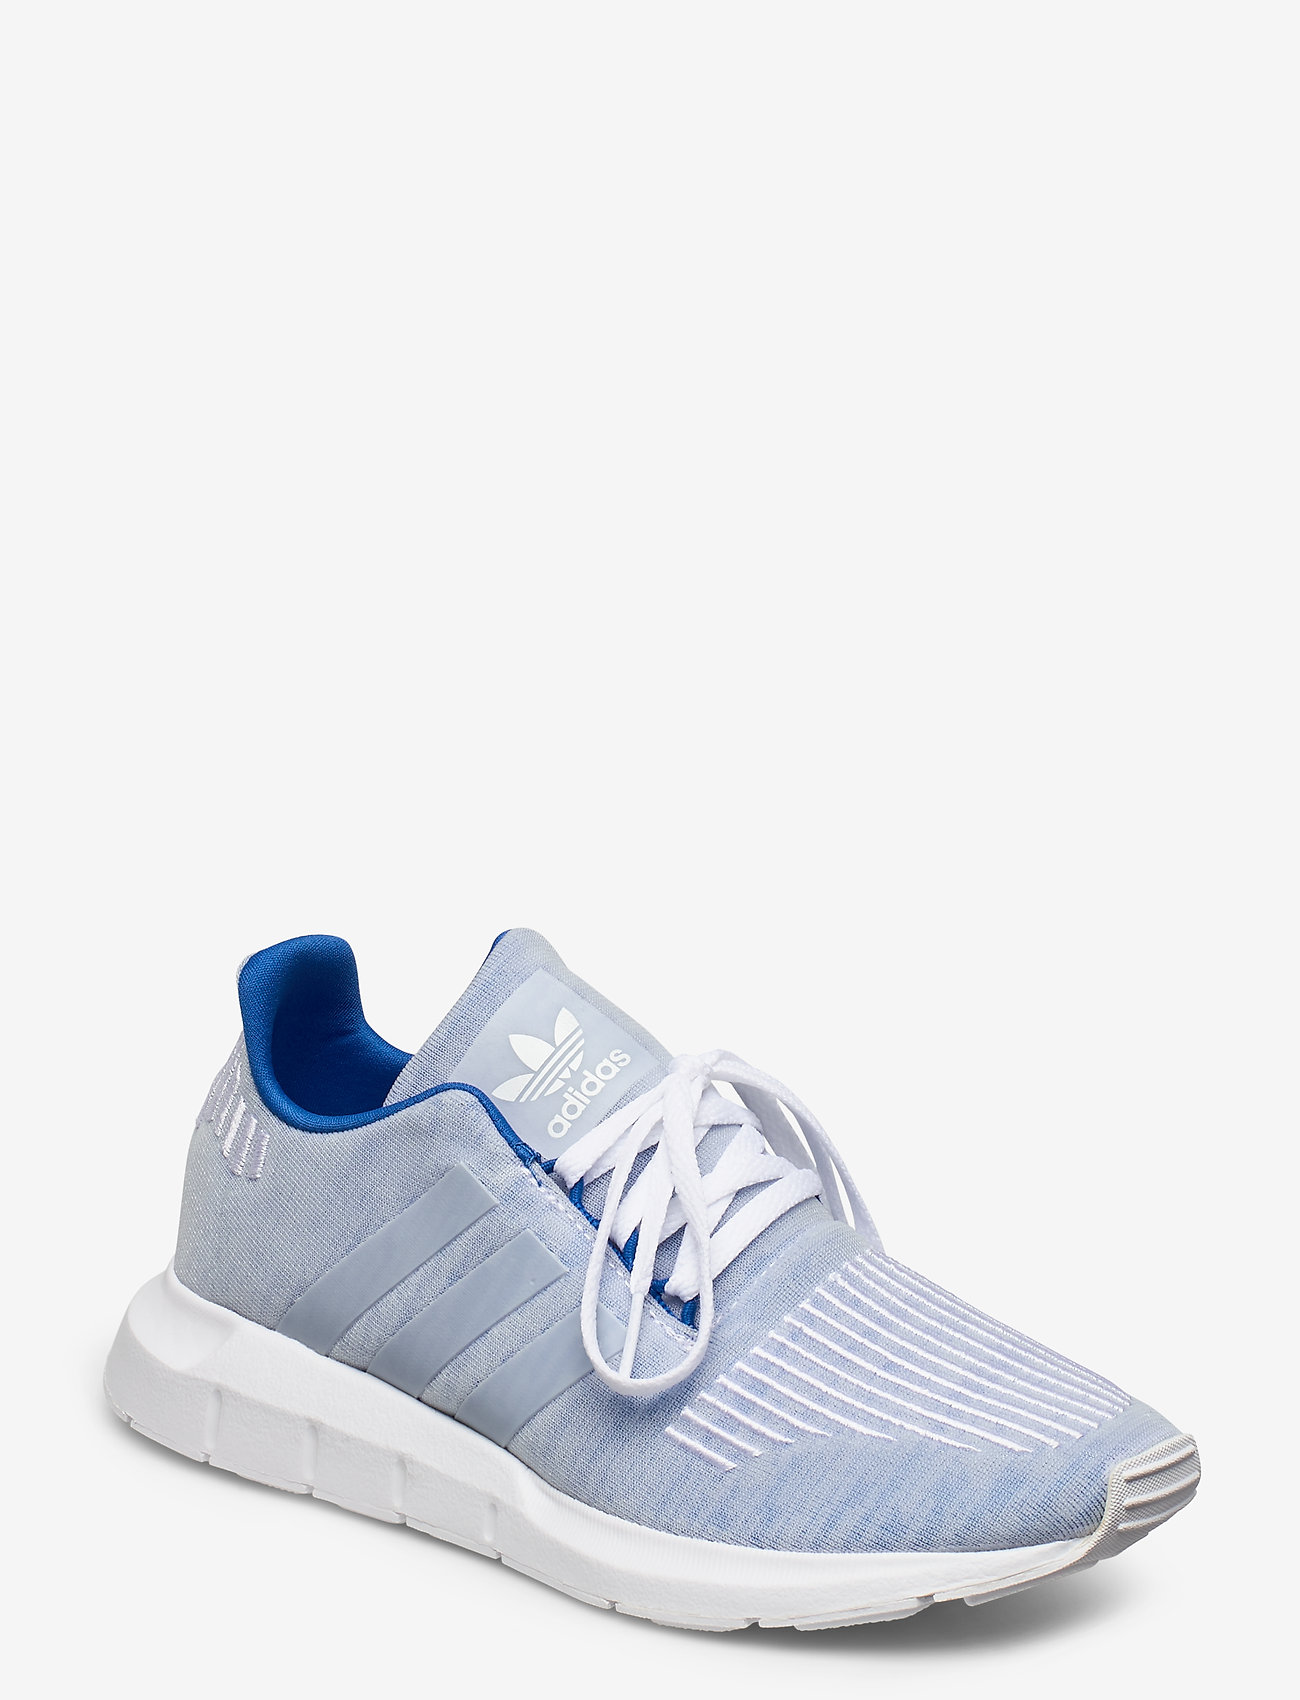 adidas swift run light blue shoes